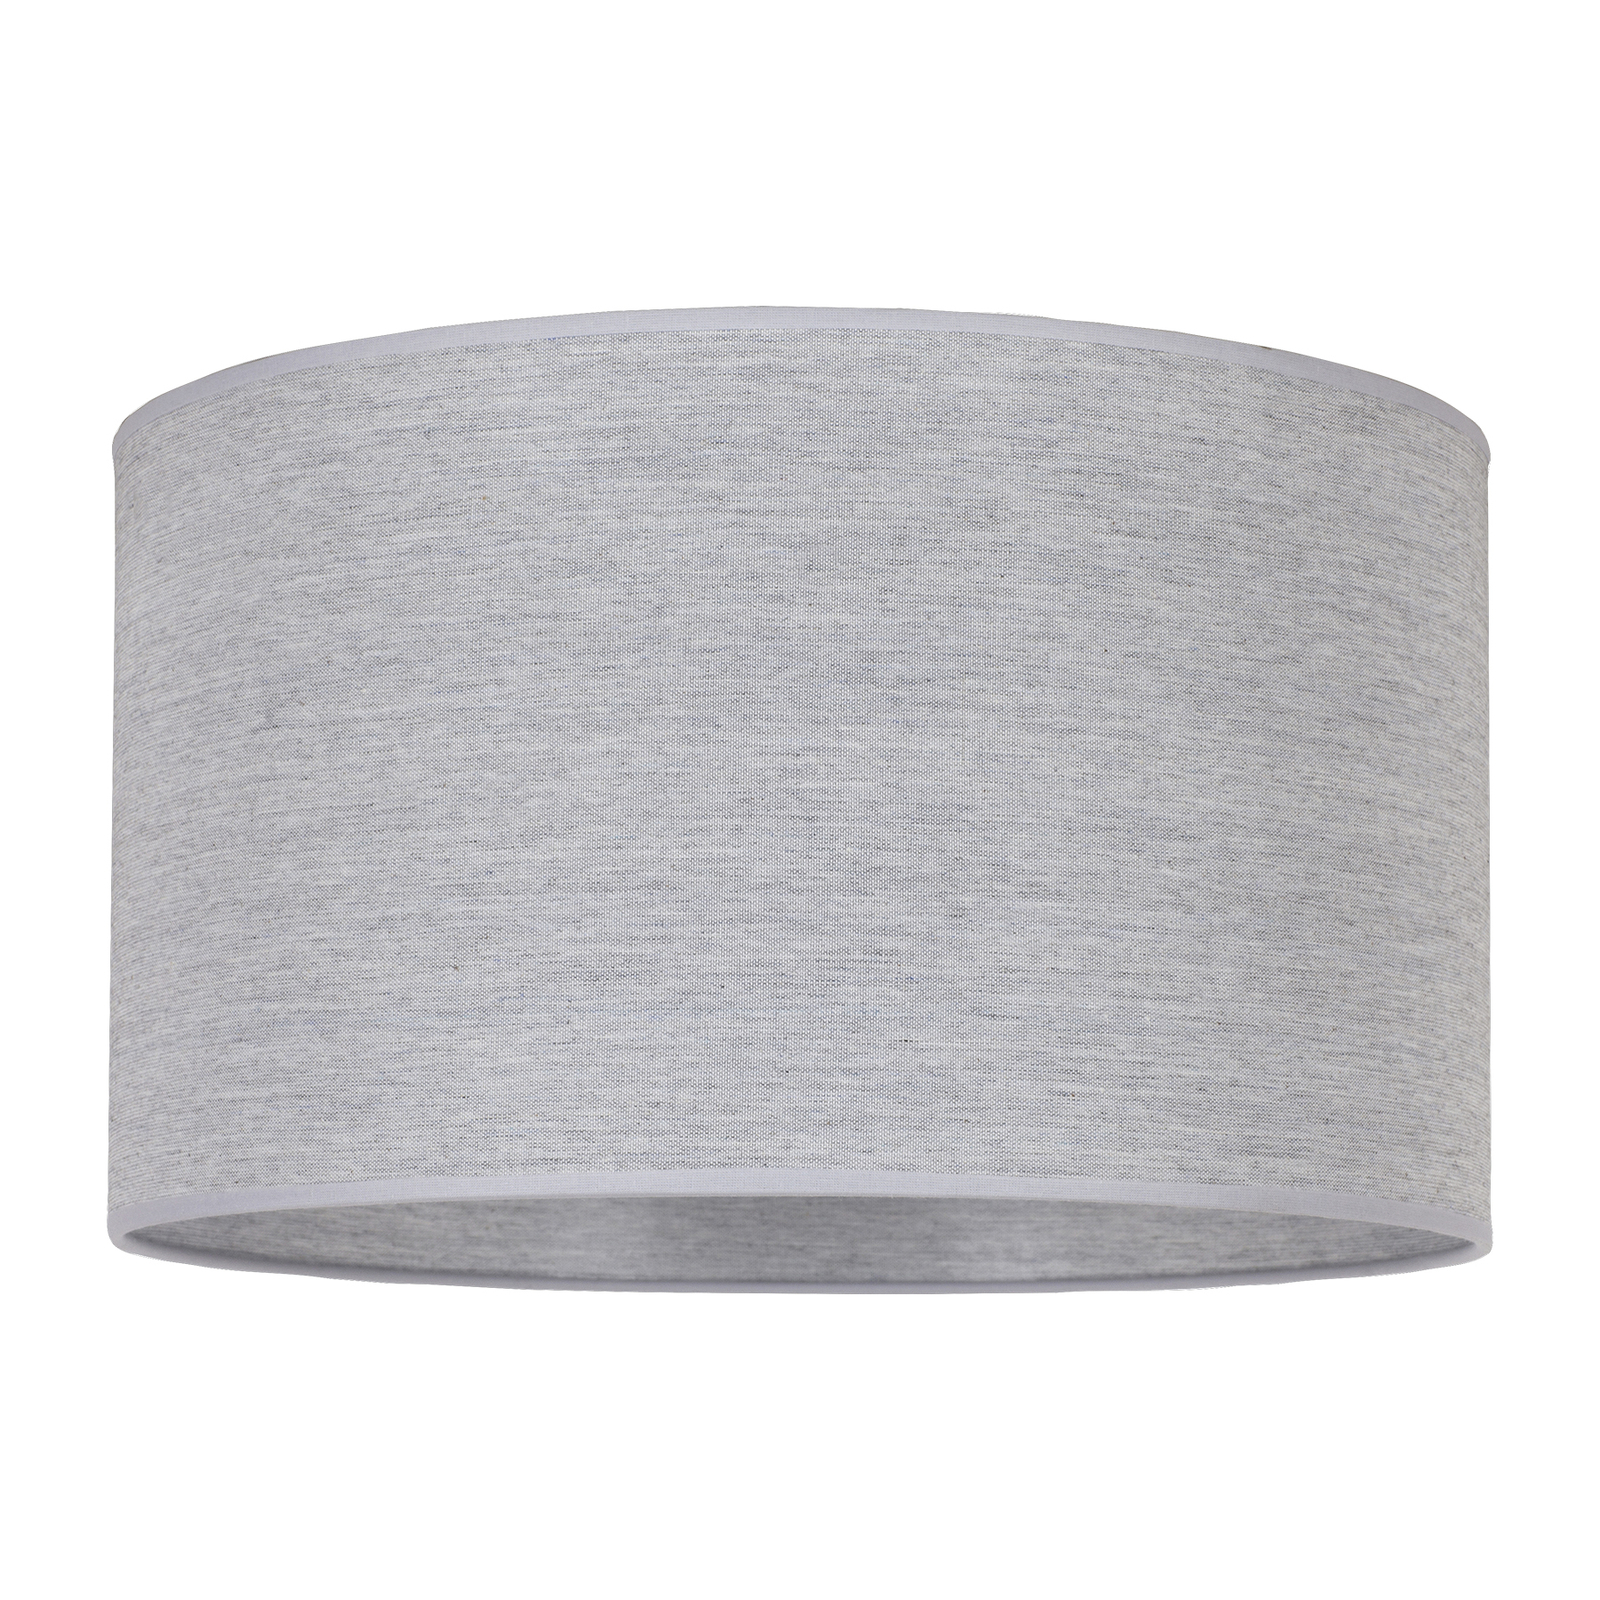 Lampeskjerm Roller, grå, Ø 40 cm, høyde 22 cm